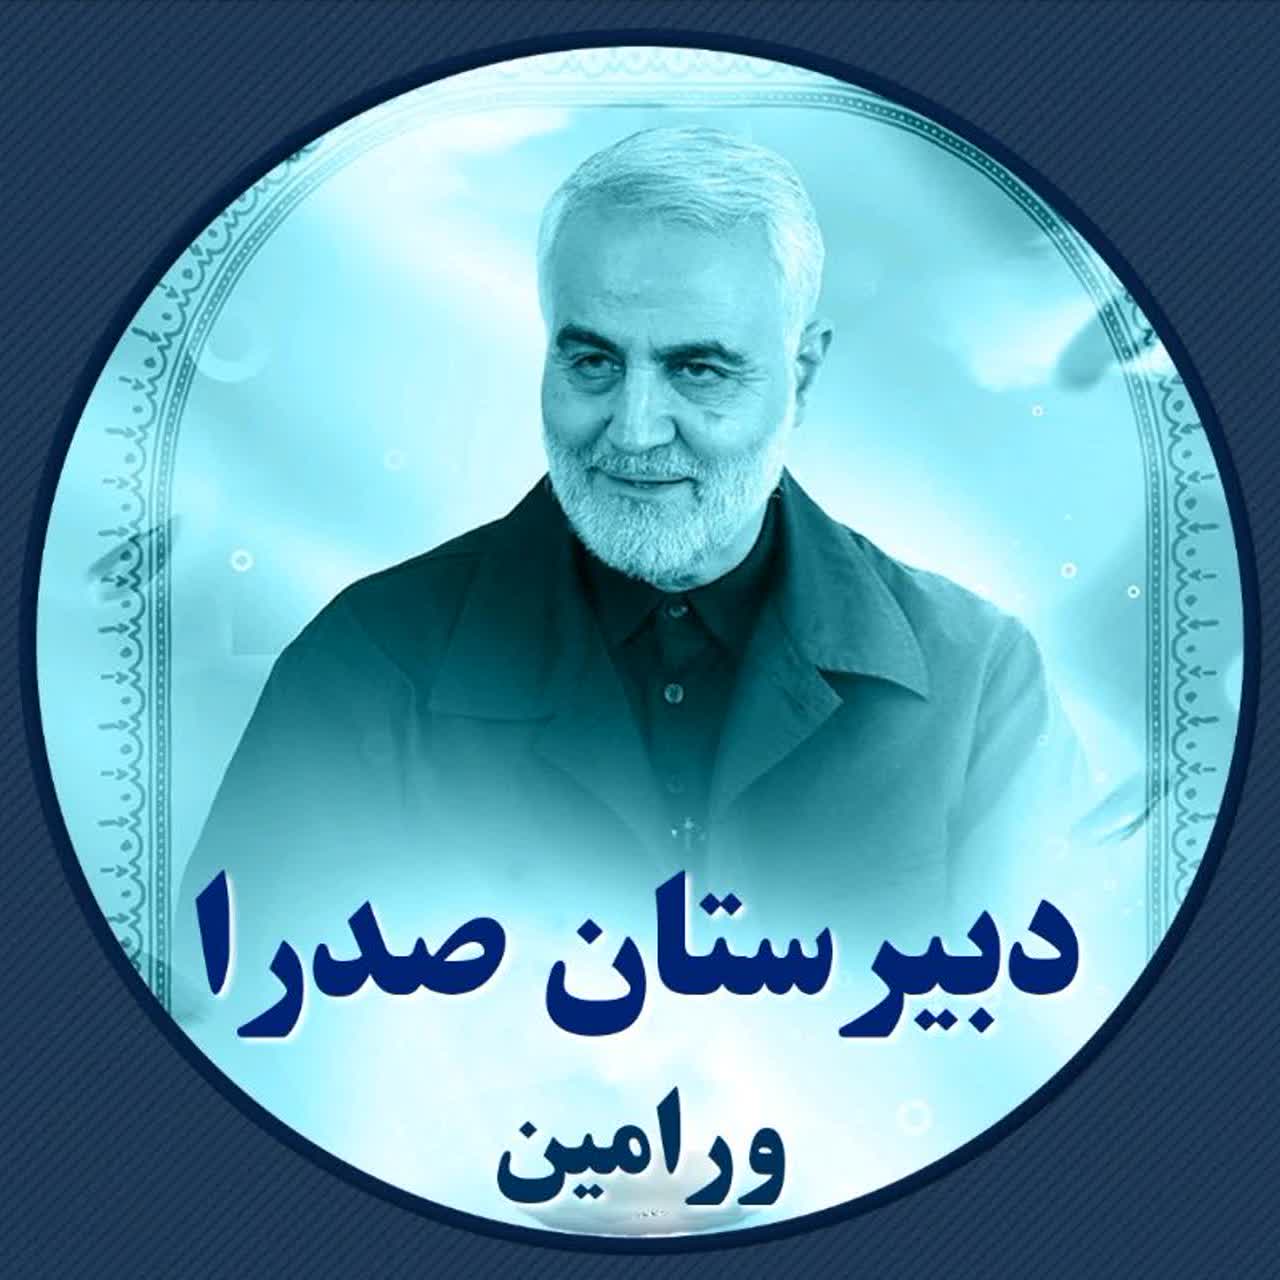 دبیرستان پسرانه صدرای ورامین - تهران